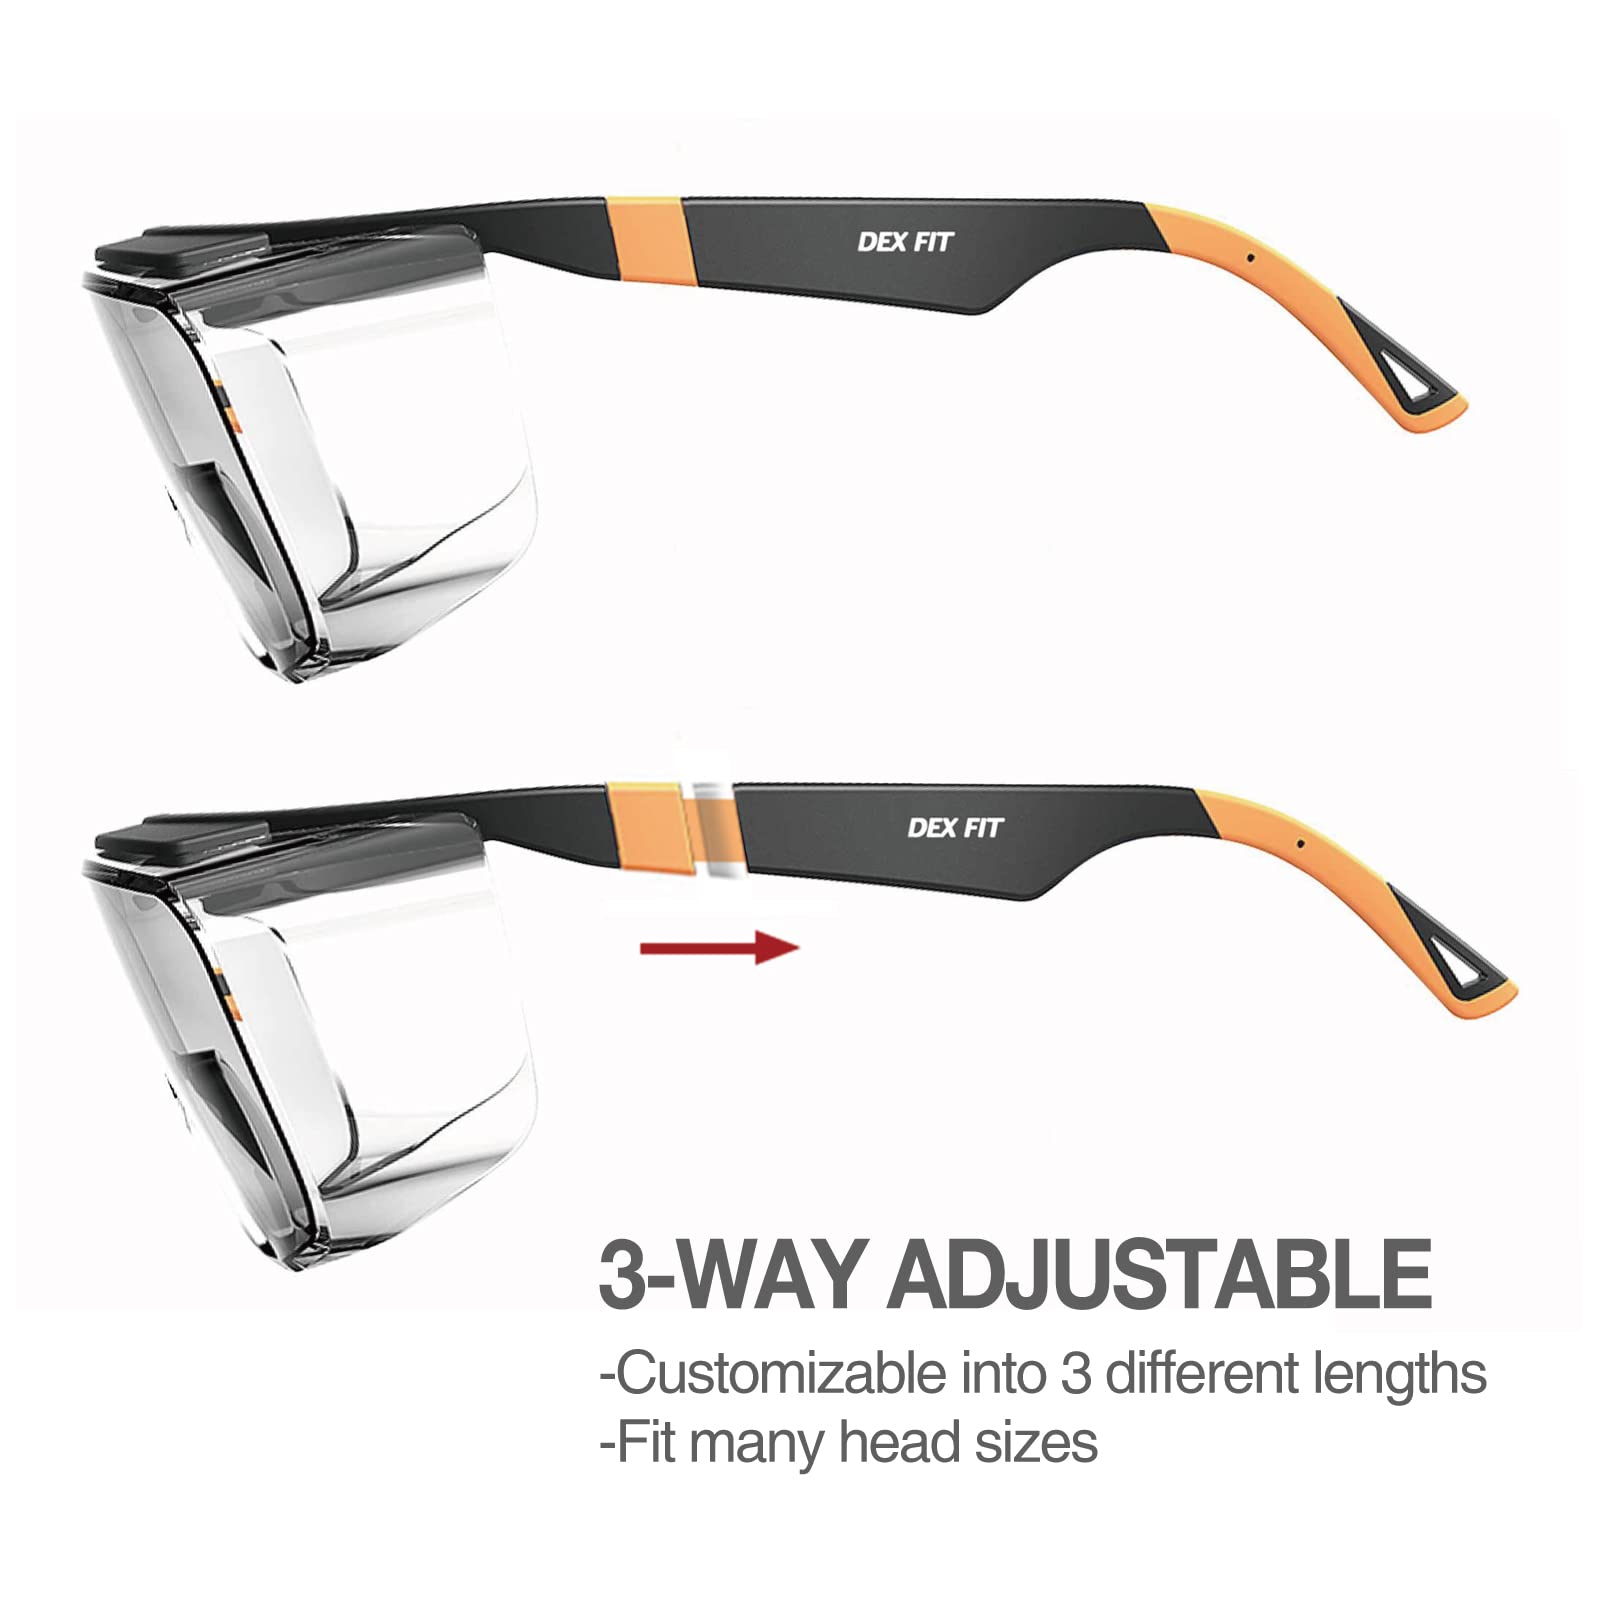 DEX FIT Safety Work Over Glasses SG210 OTG; Z87 Eye Protection for Men & Women, Fog & Scratch Resistant, Adjustable, UV Block (Black & Grey Frame, Clear Lens)